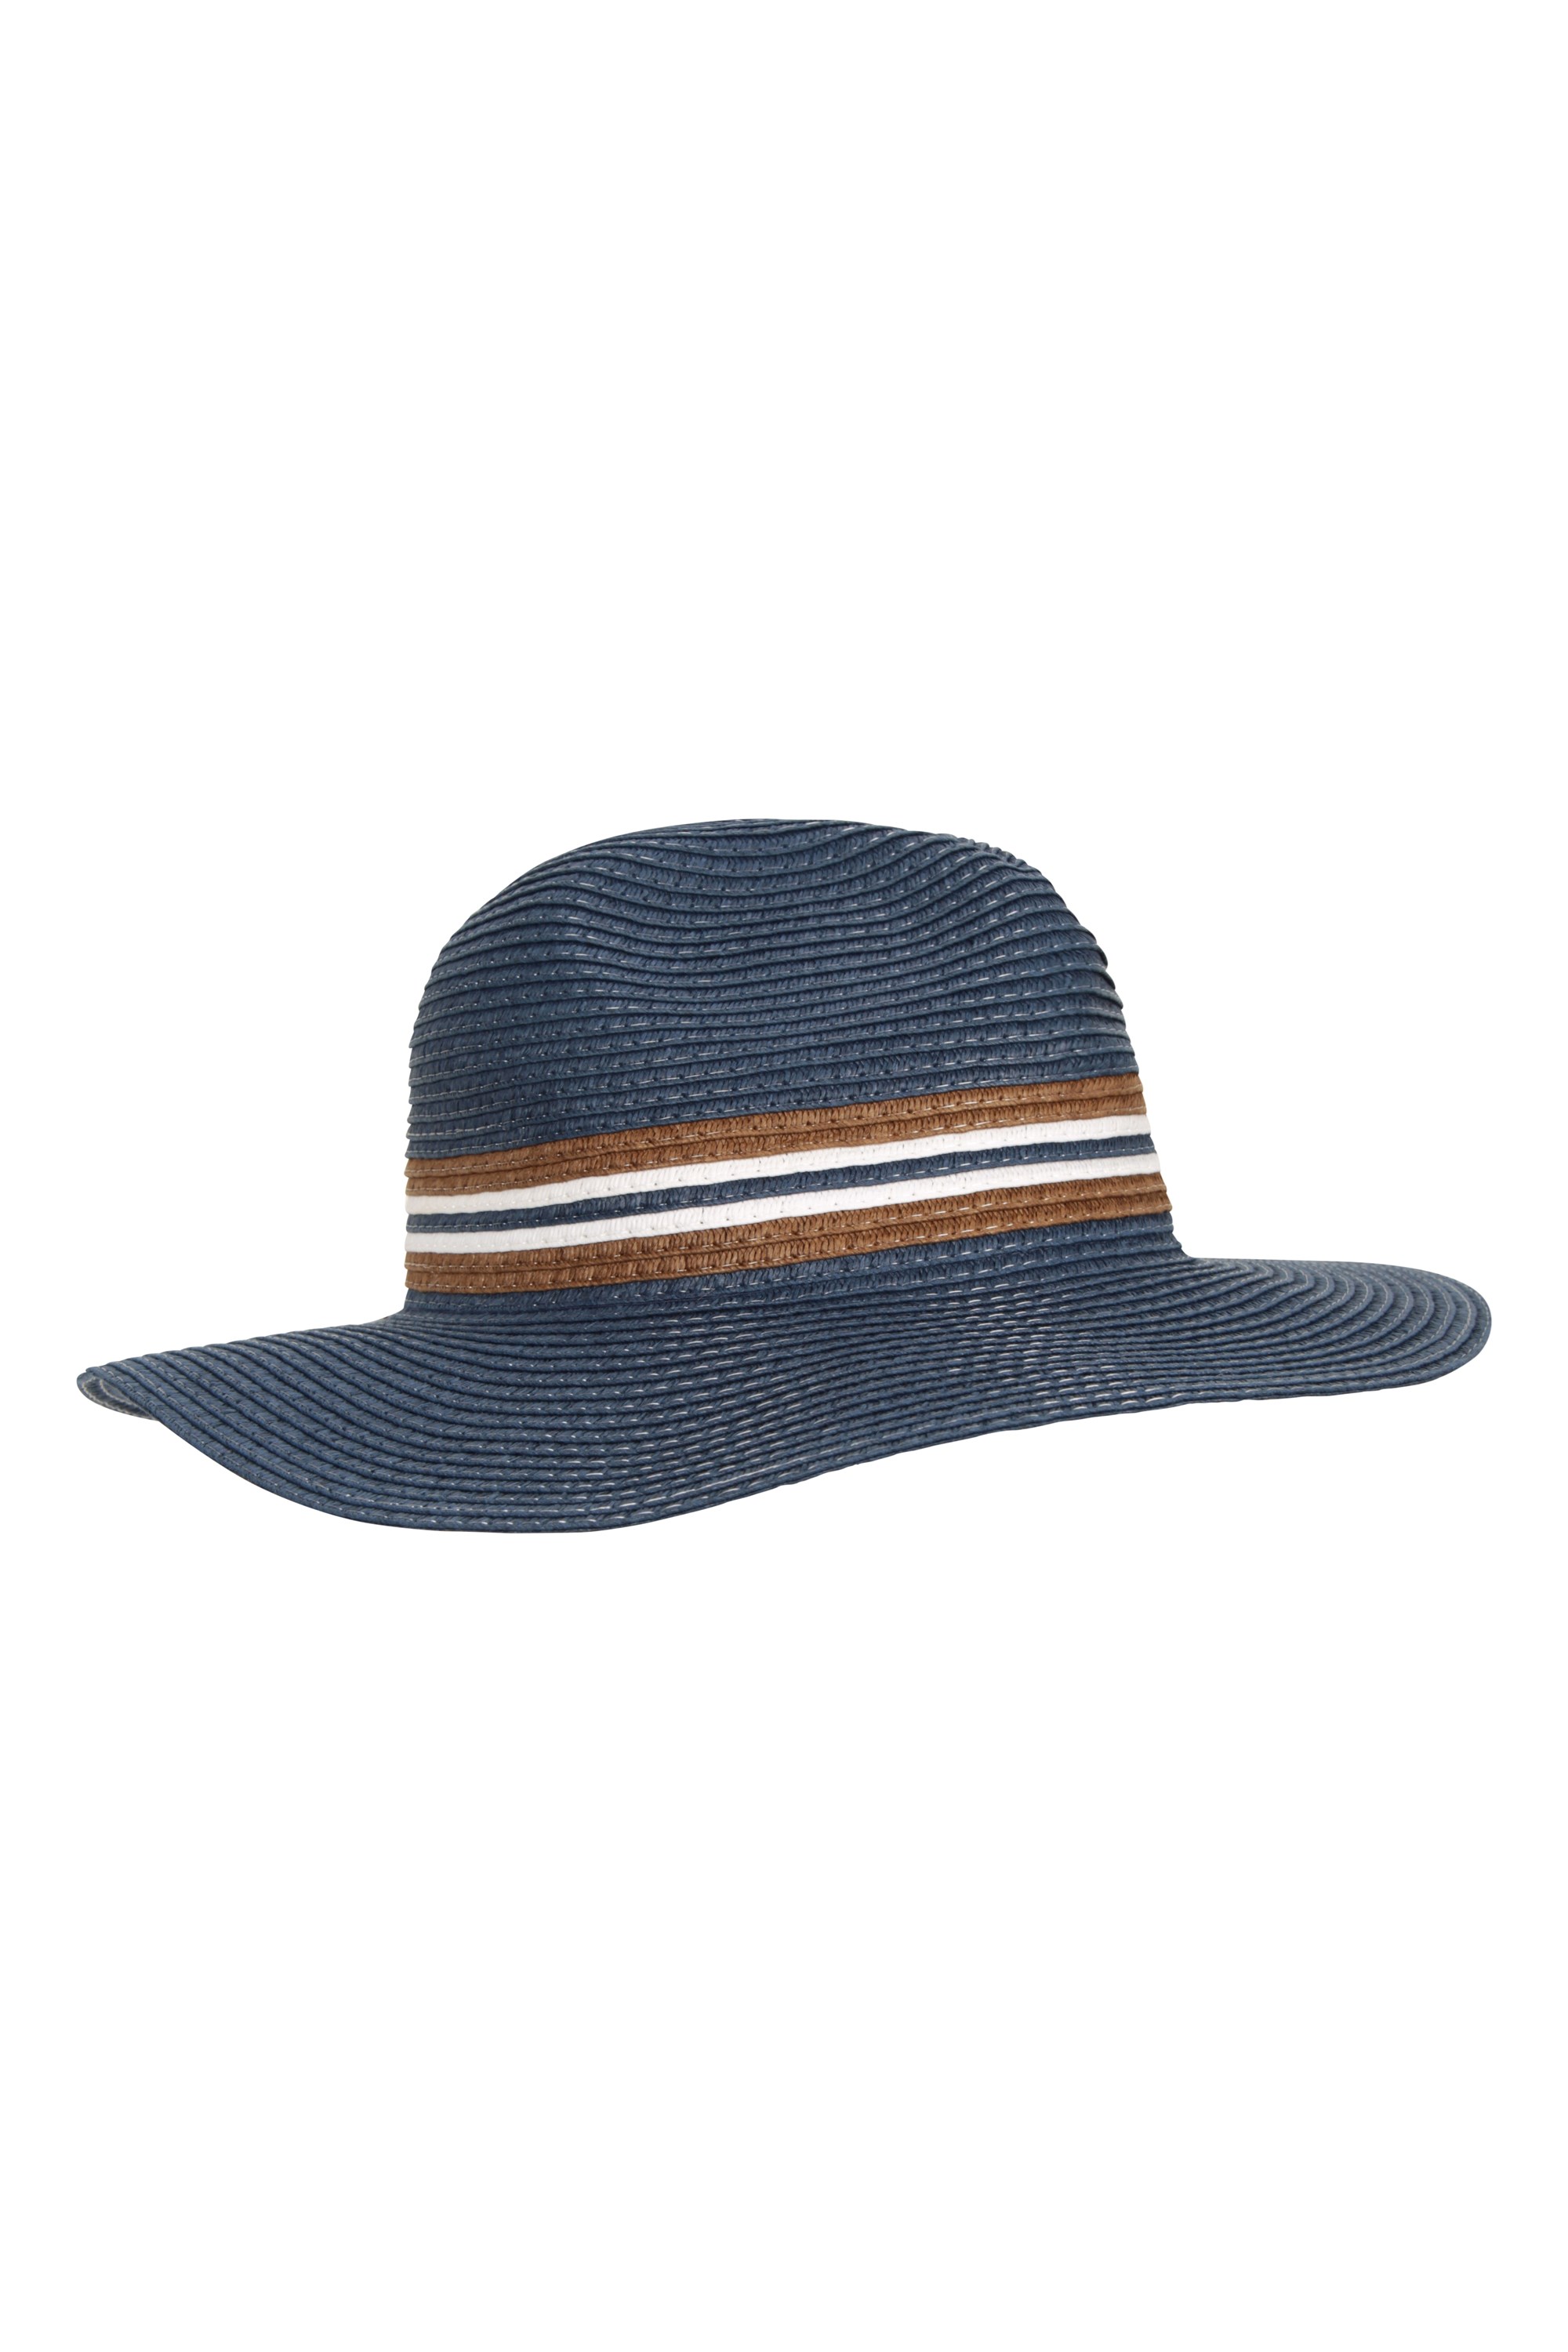 Dunedin kapelusz fedora - Navy